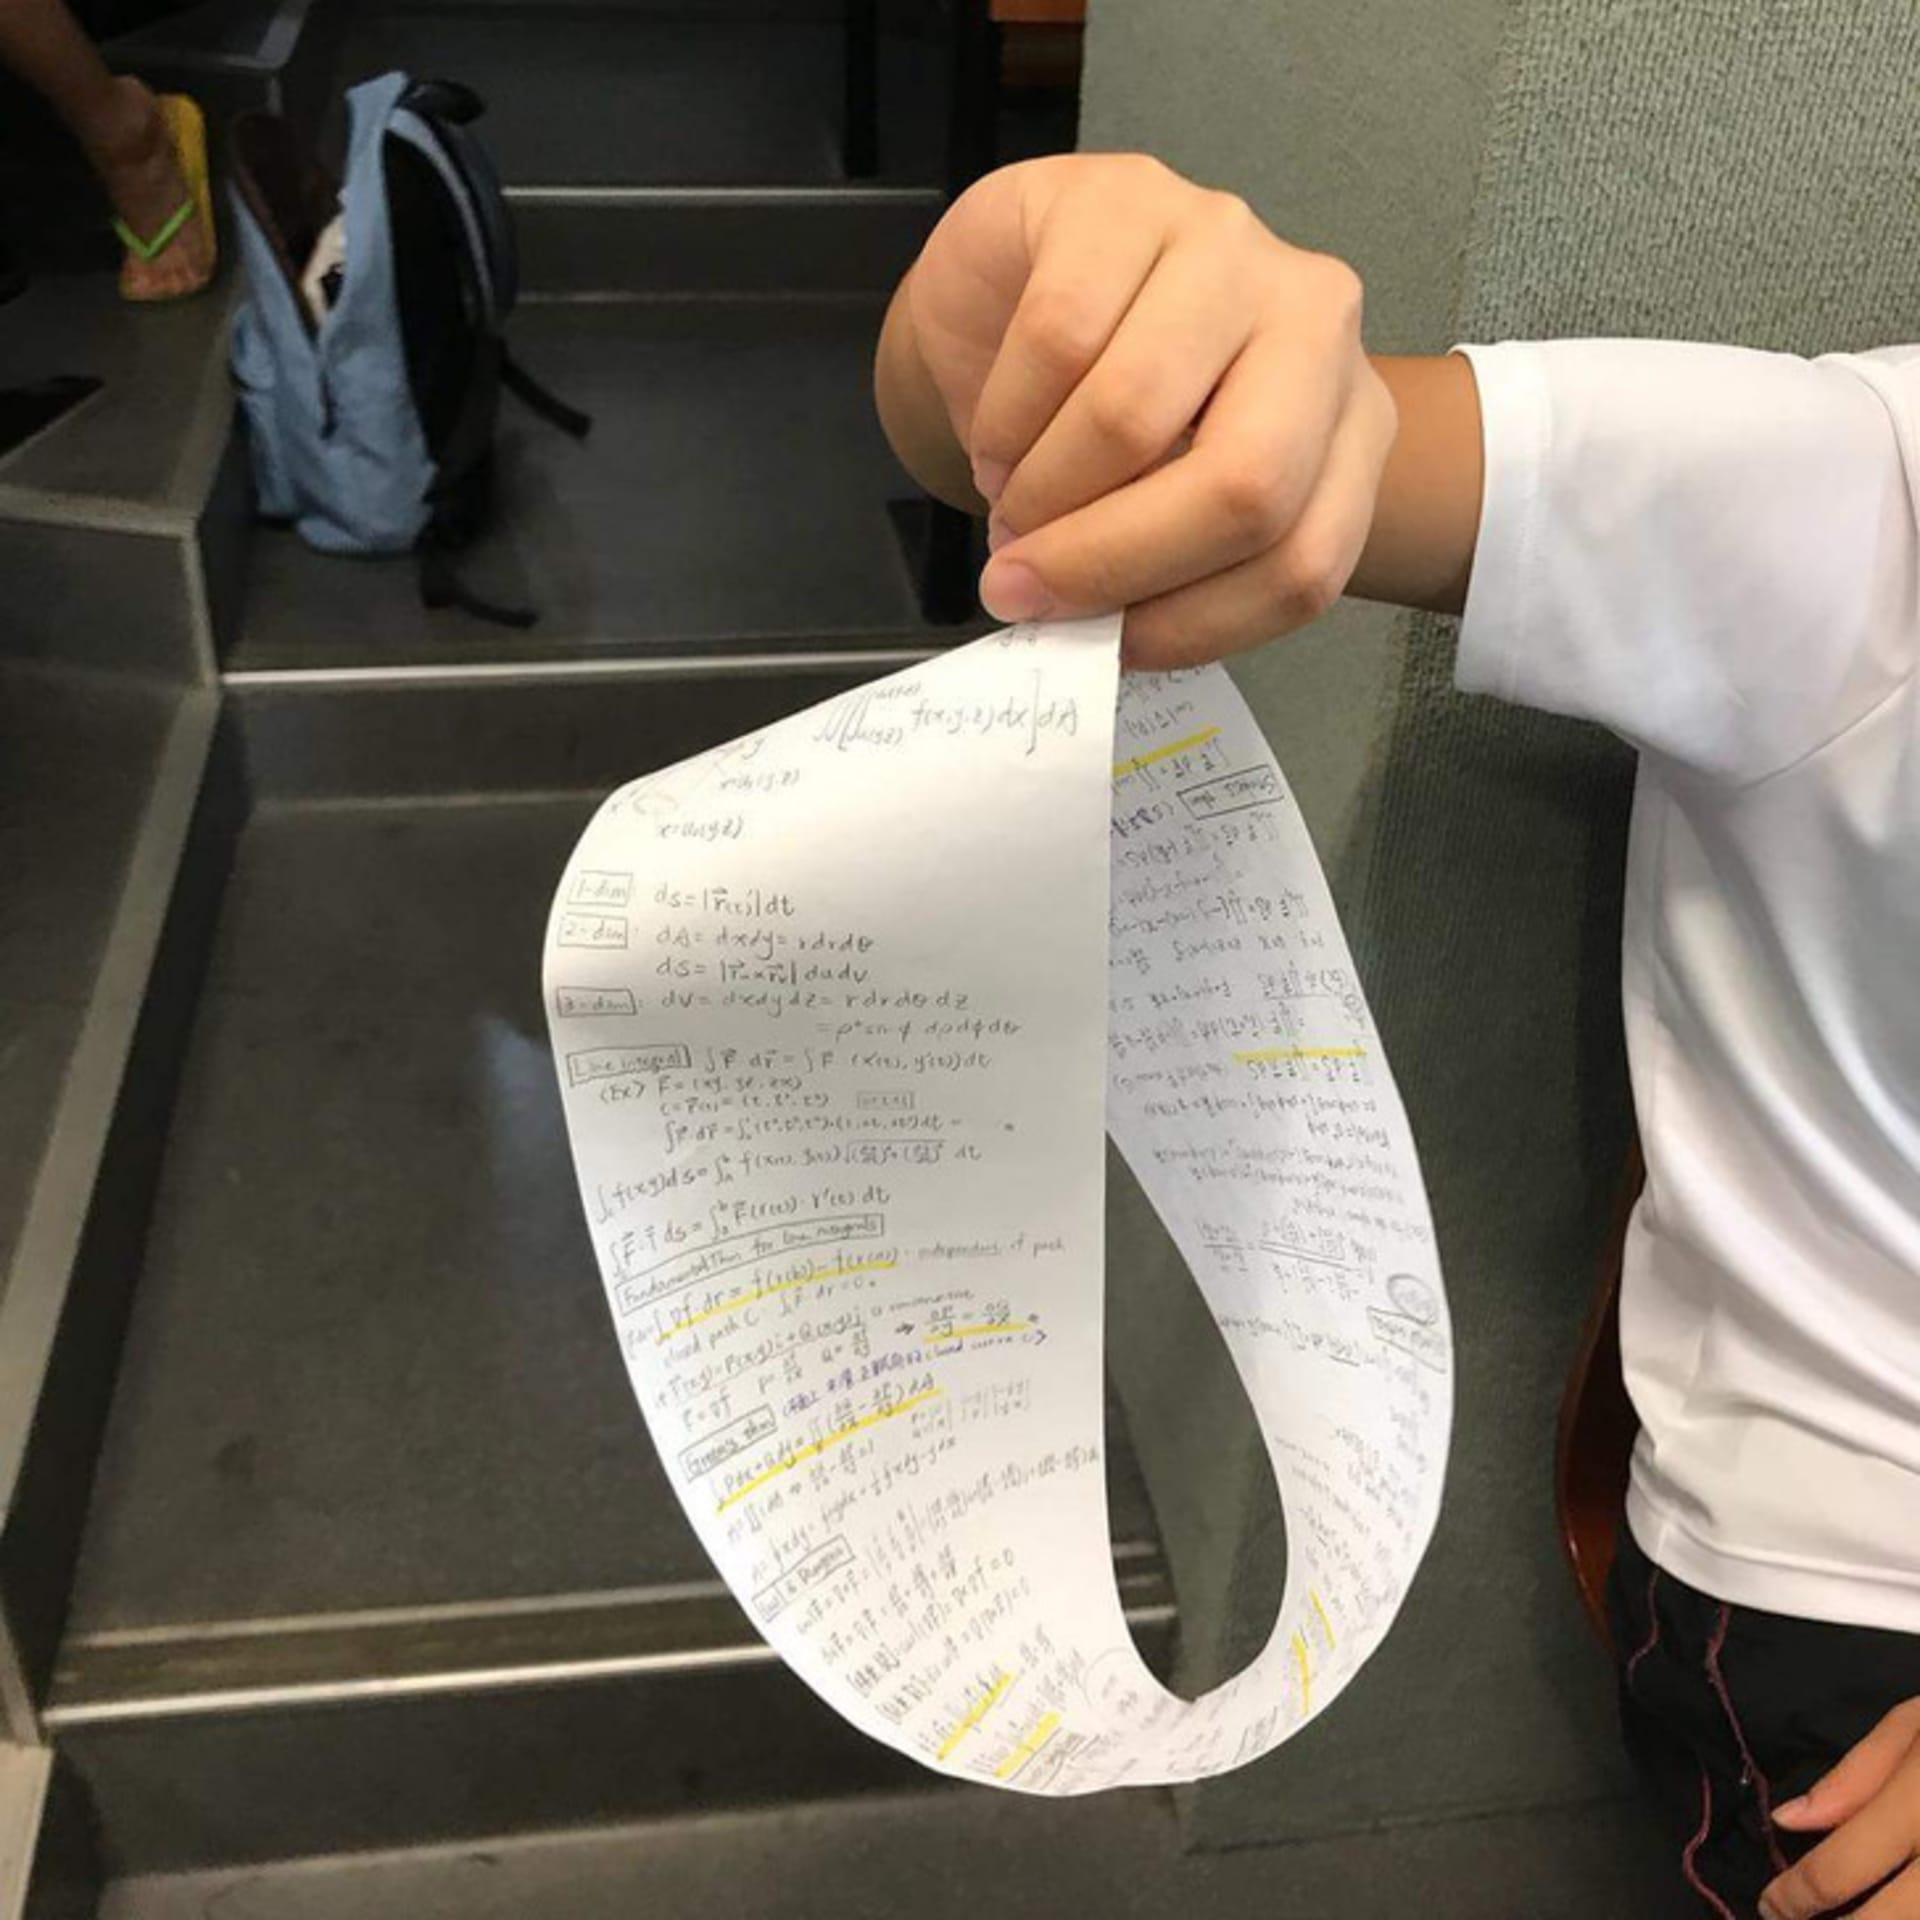 K testu si žáci mohli přinést poznámky na jednostranném papíru.